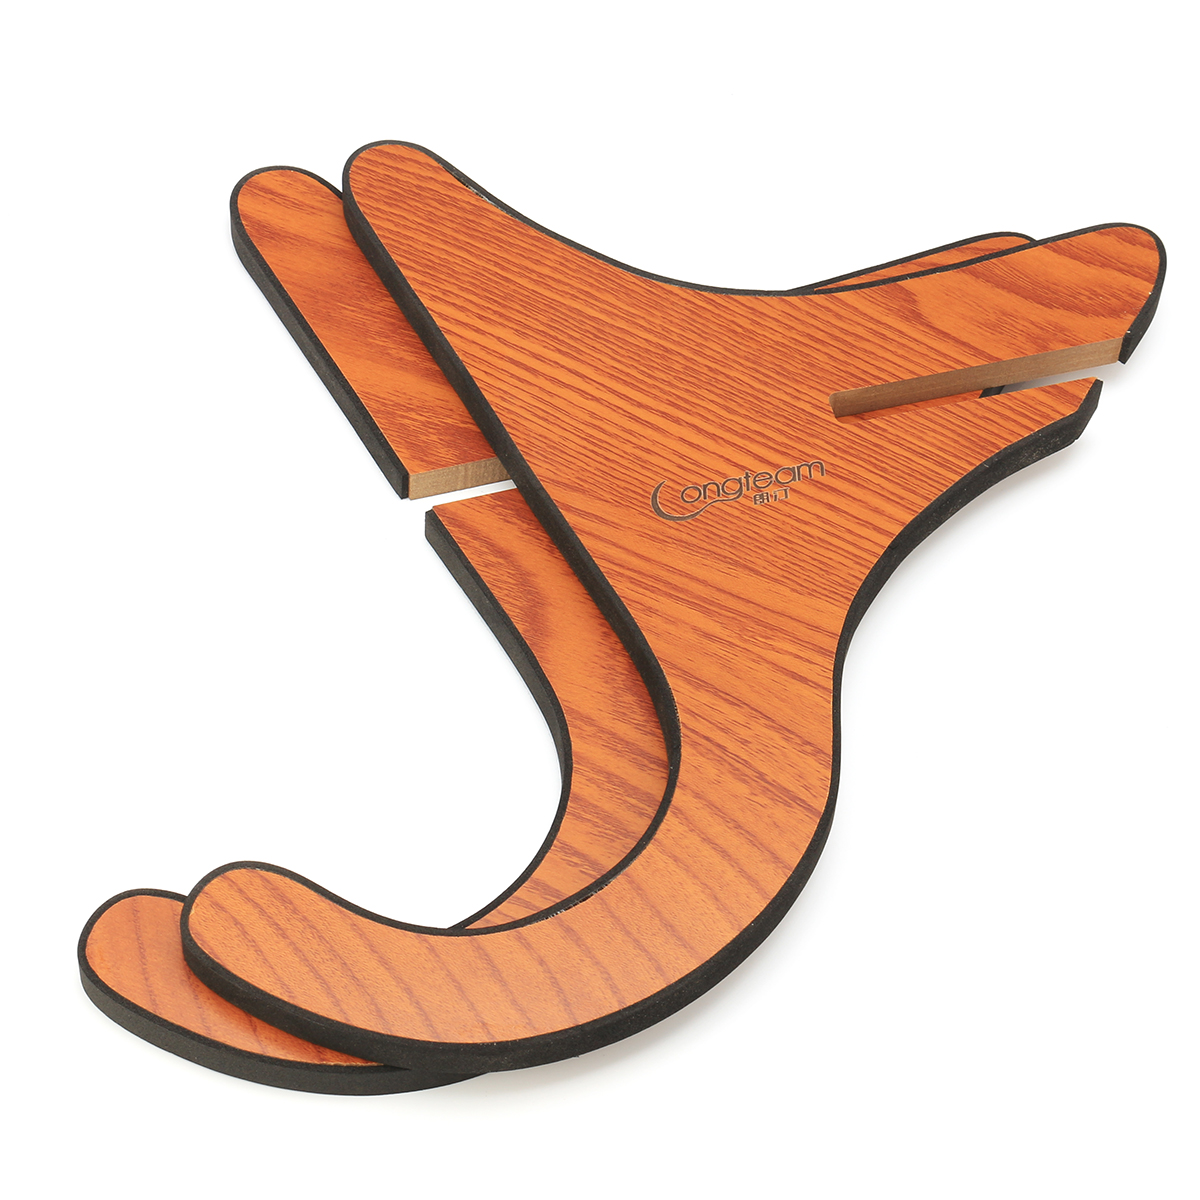 Multifunctional-Wooden-Guitar-Ukulele-Tablet-Holder-Desktop-Bracket-Stand-1876166-7